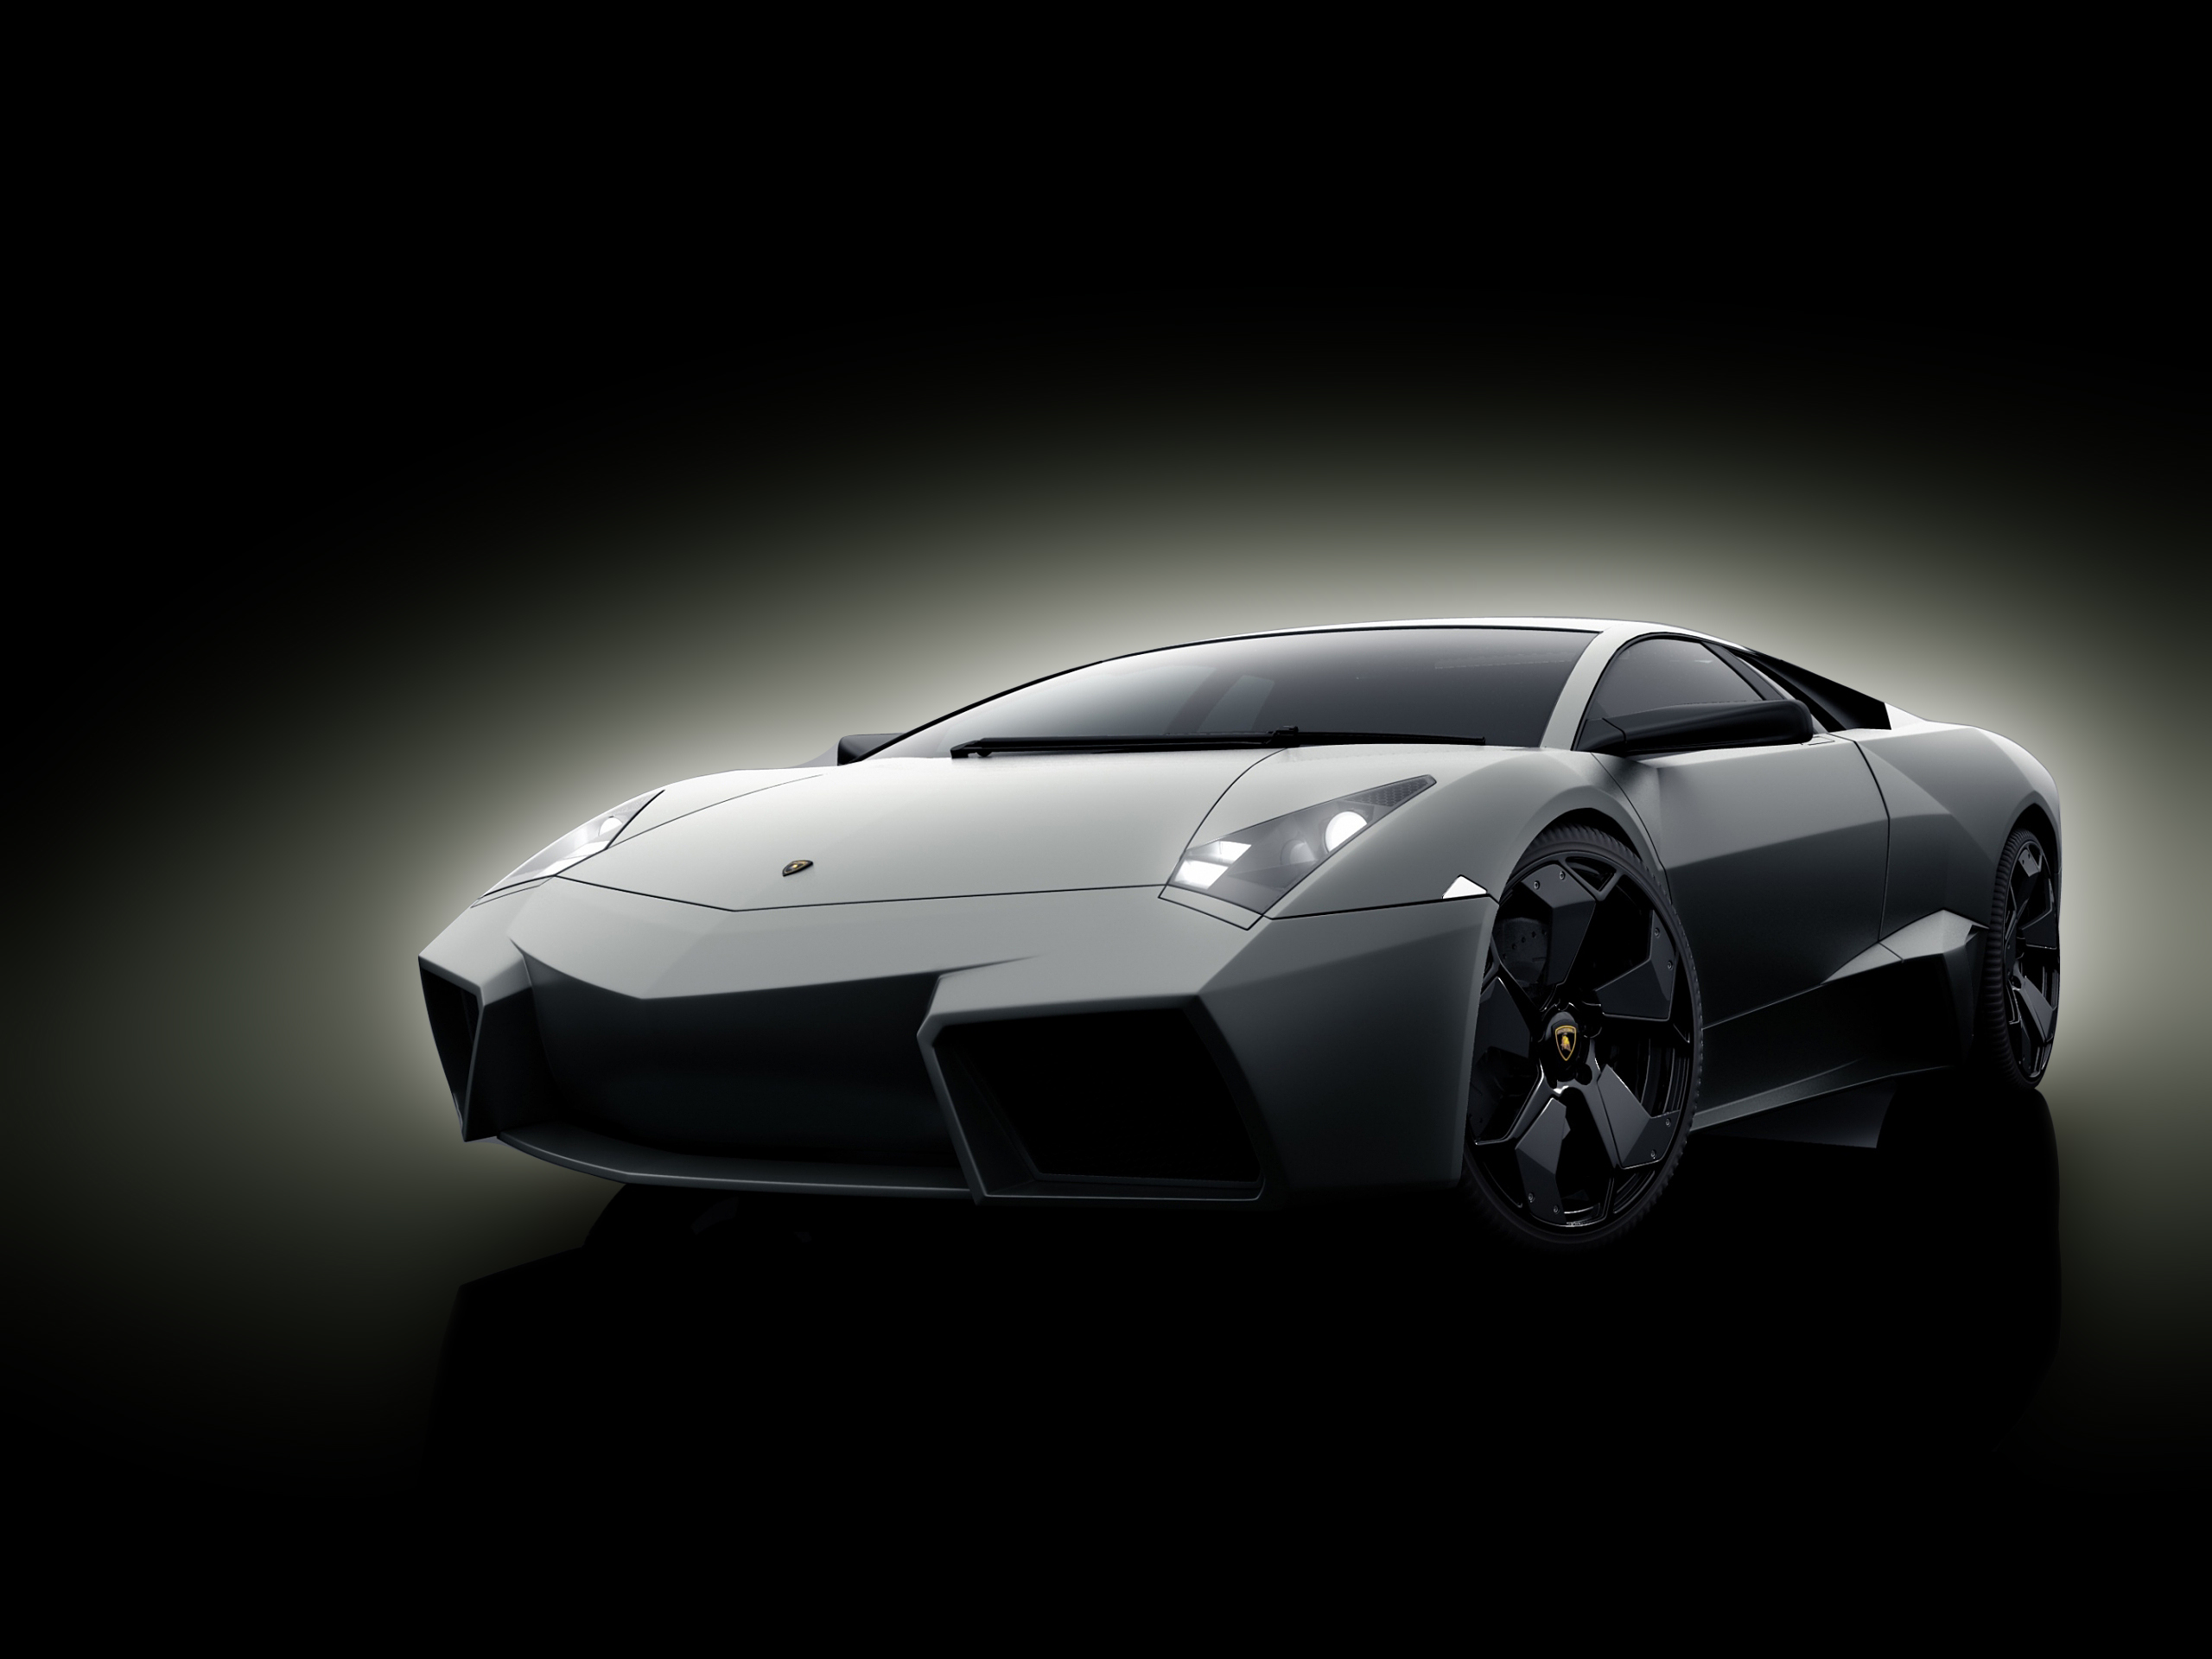 Hình nền Lamborghini Reventón với thiết kế đầy mê hoặc sẽ khiến bạn thích thú. Với màu sắc sặc sỡ, cùng đường nét sắc sảo và đầy uy lực, đây chắc chắn sẽ là lựa chọn hoàn hảo để trang trí cho máy tính và điện thoại của bạn. 